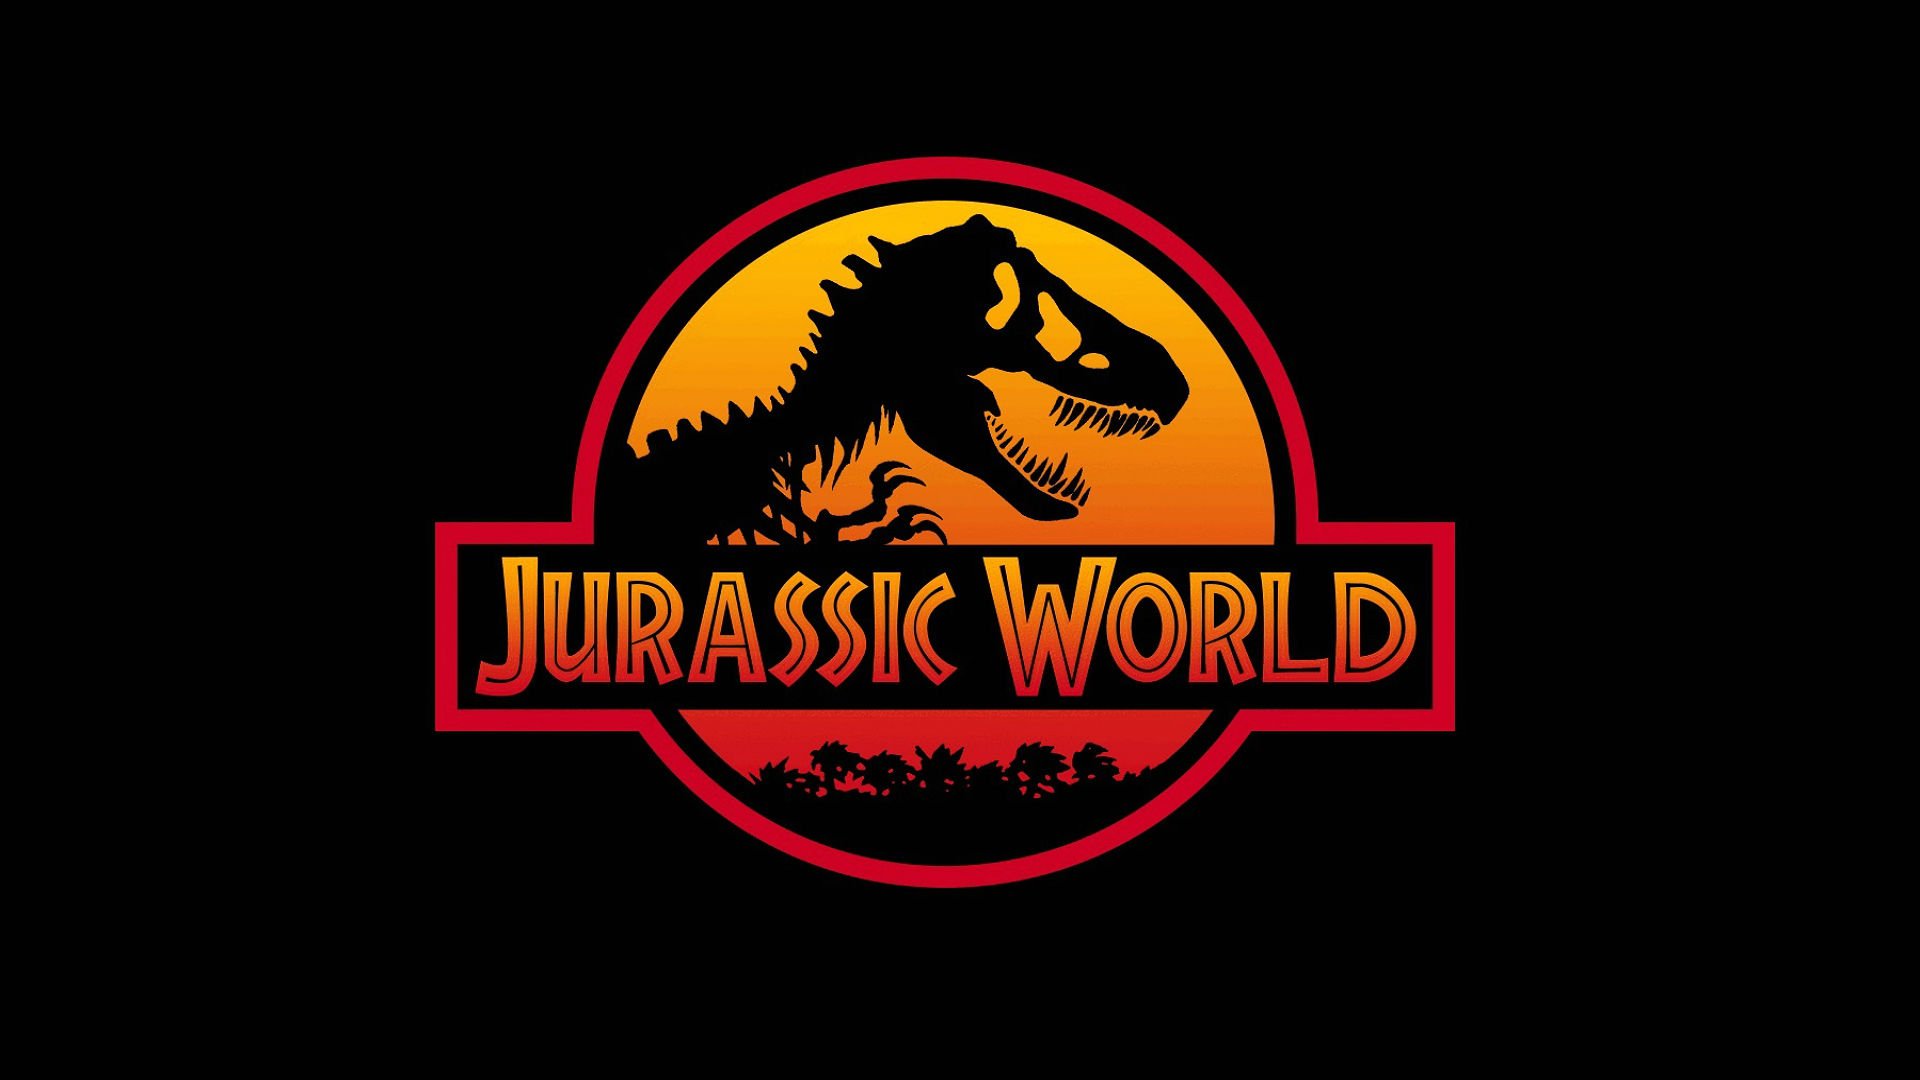 jurassic, World, Adventure, Sci fi, Dinosaur, Fantasy, Film, 2015, Park,  1 Wallpaper